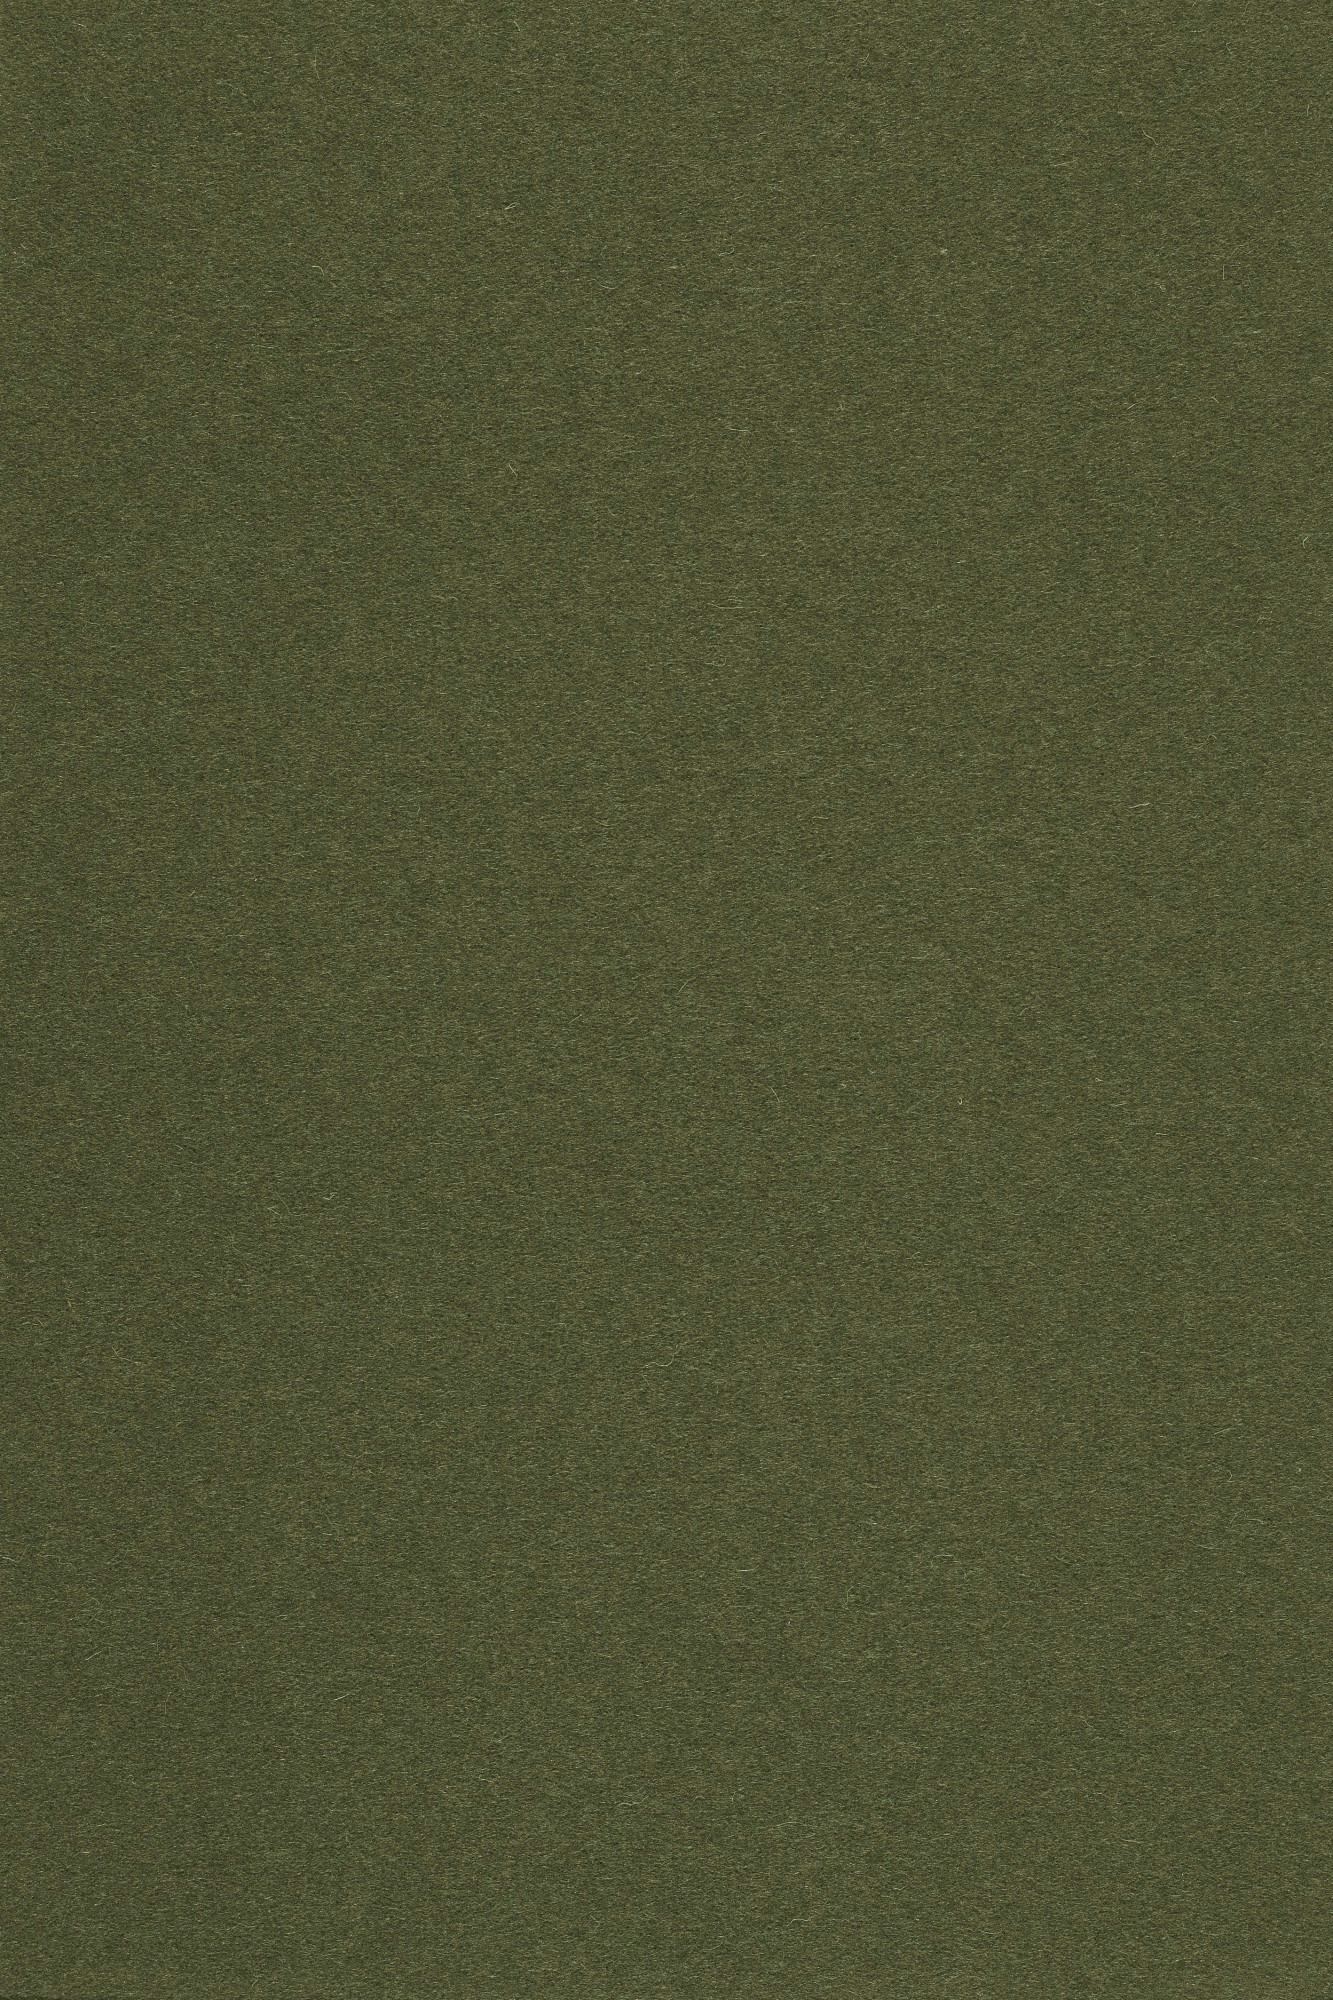 Fabric sample Divina 3 984 green